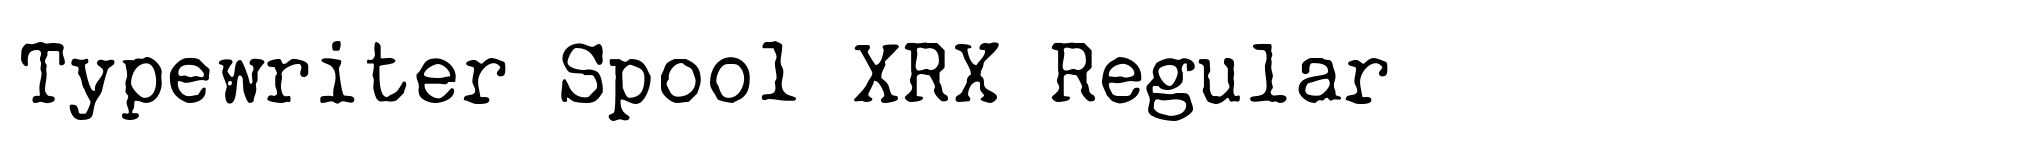 Typewriter Spool XRX Regular image